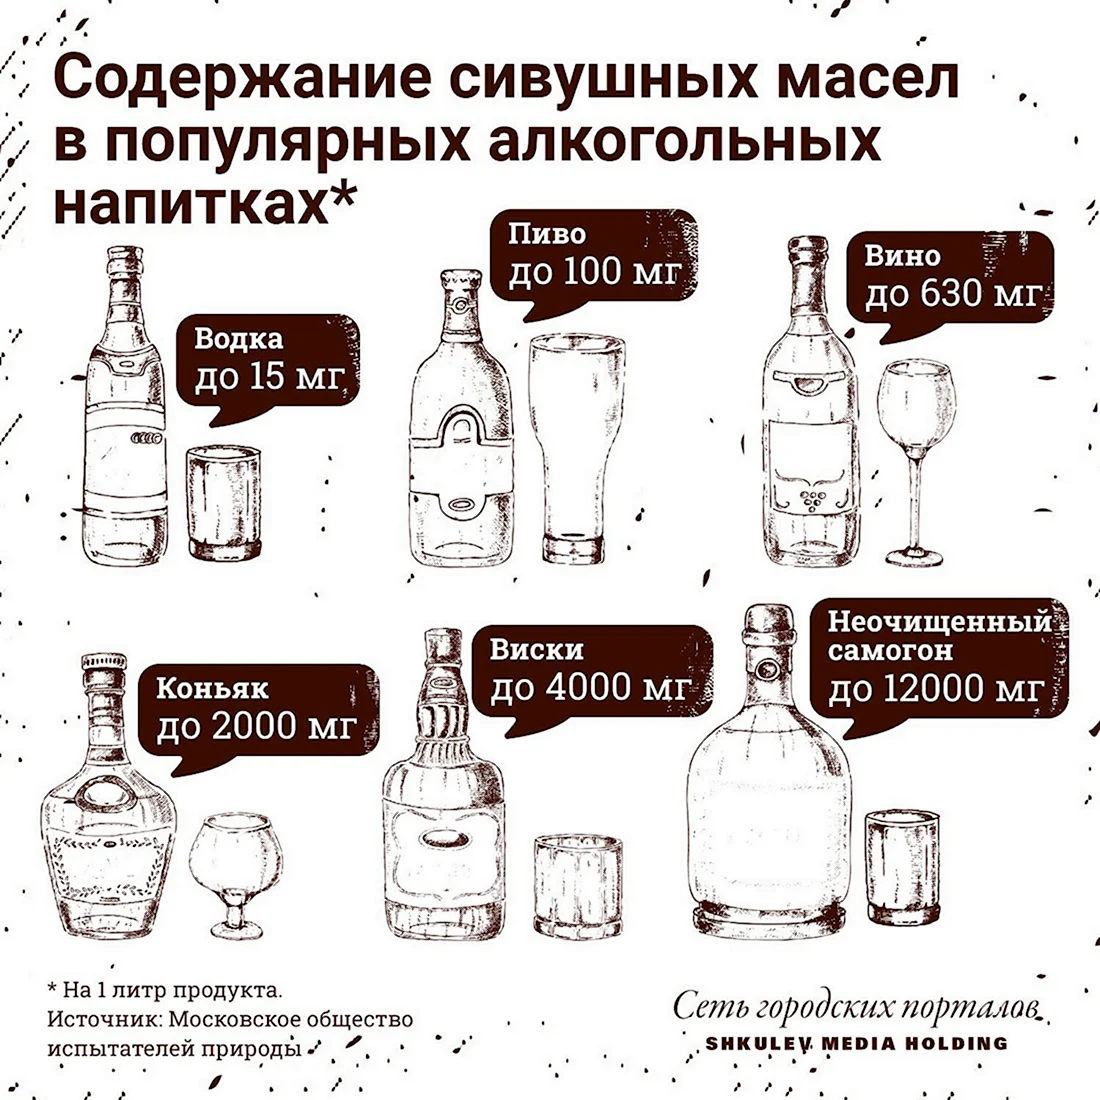 Таблица сивушных масел в спиртных напитках. Поздравление на праздник